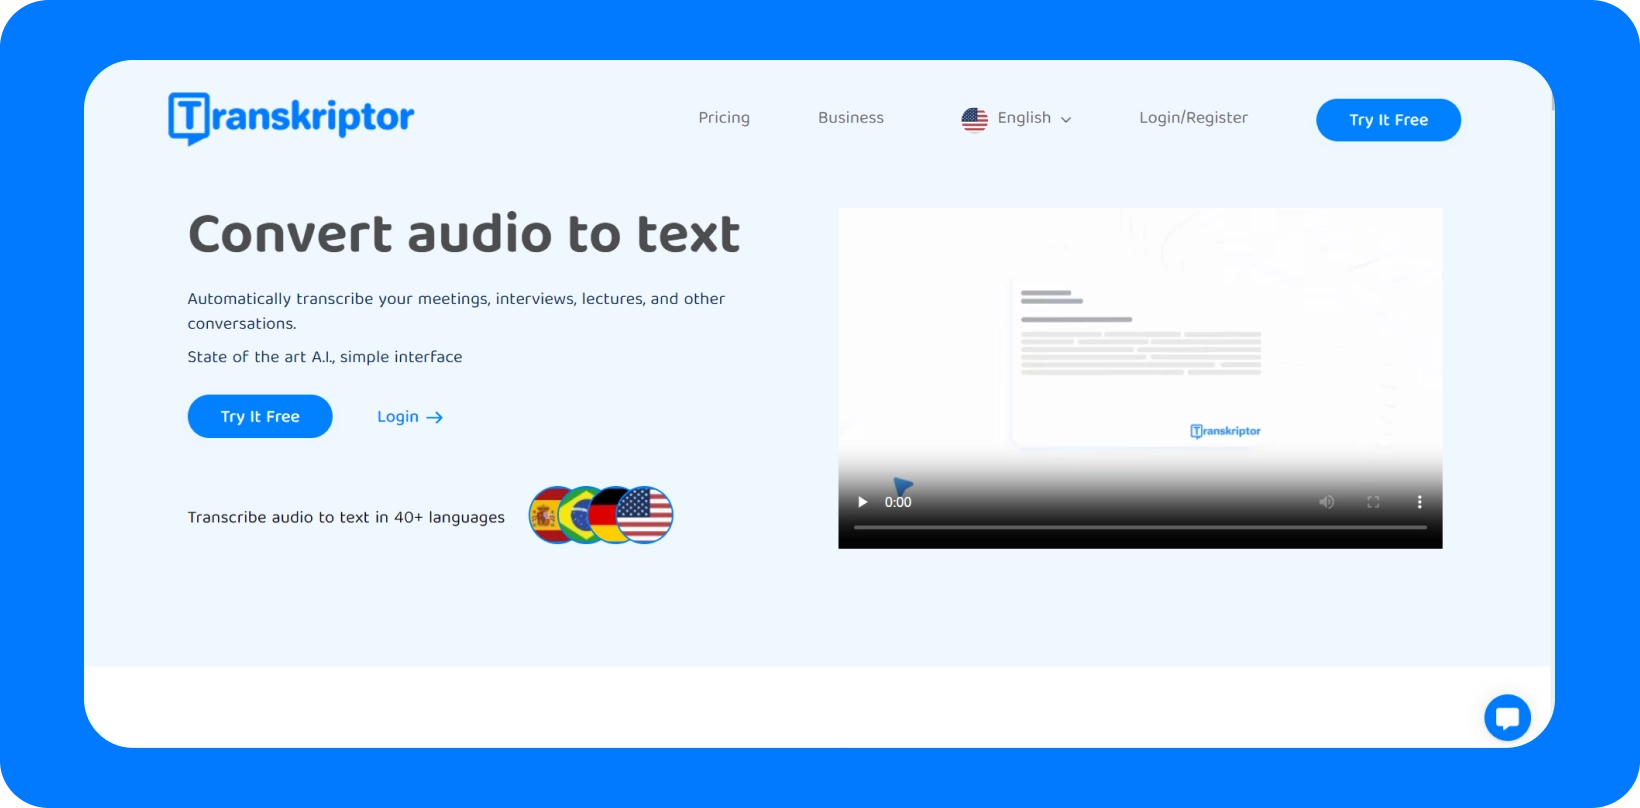 다국어를 지원하는 '오디오를 텍스트로 변환' 서비스를 보여주는 Transkriptor 인터페이스.